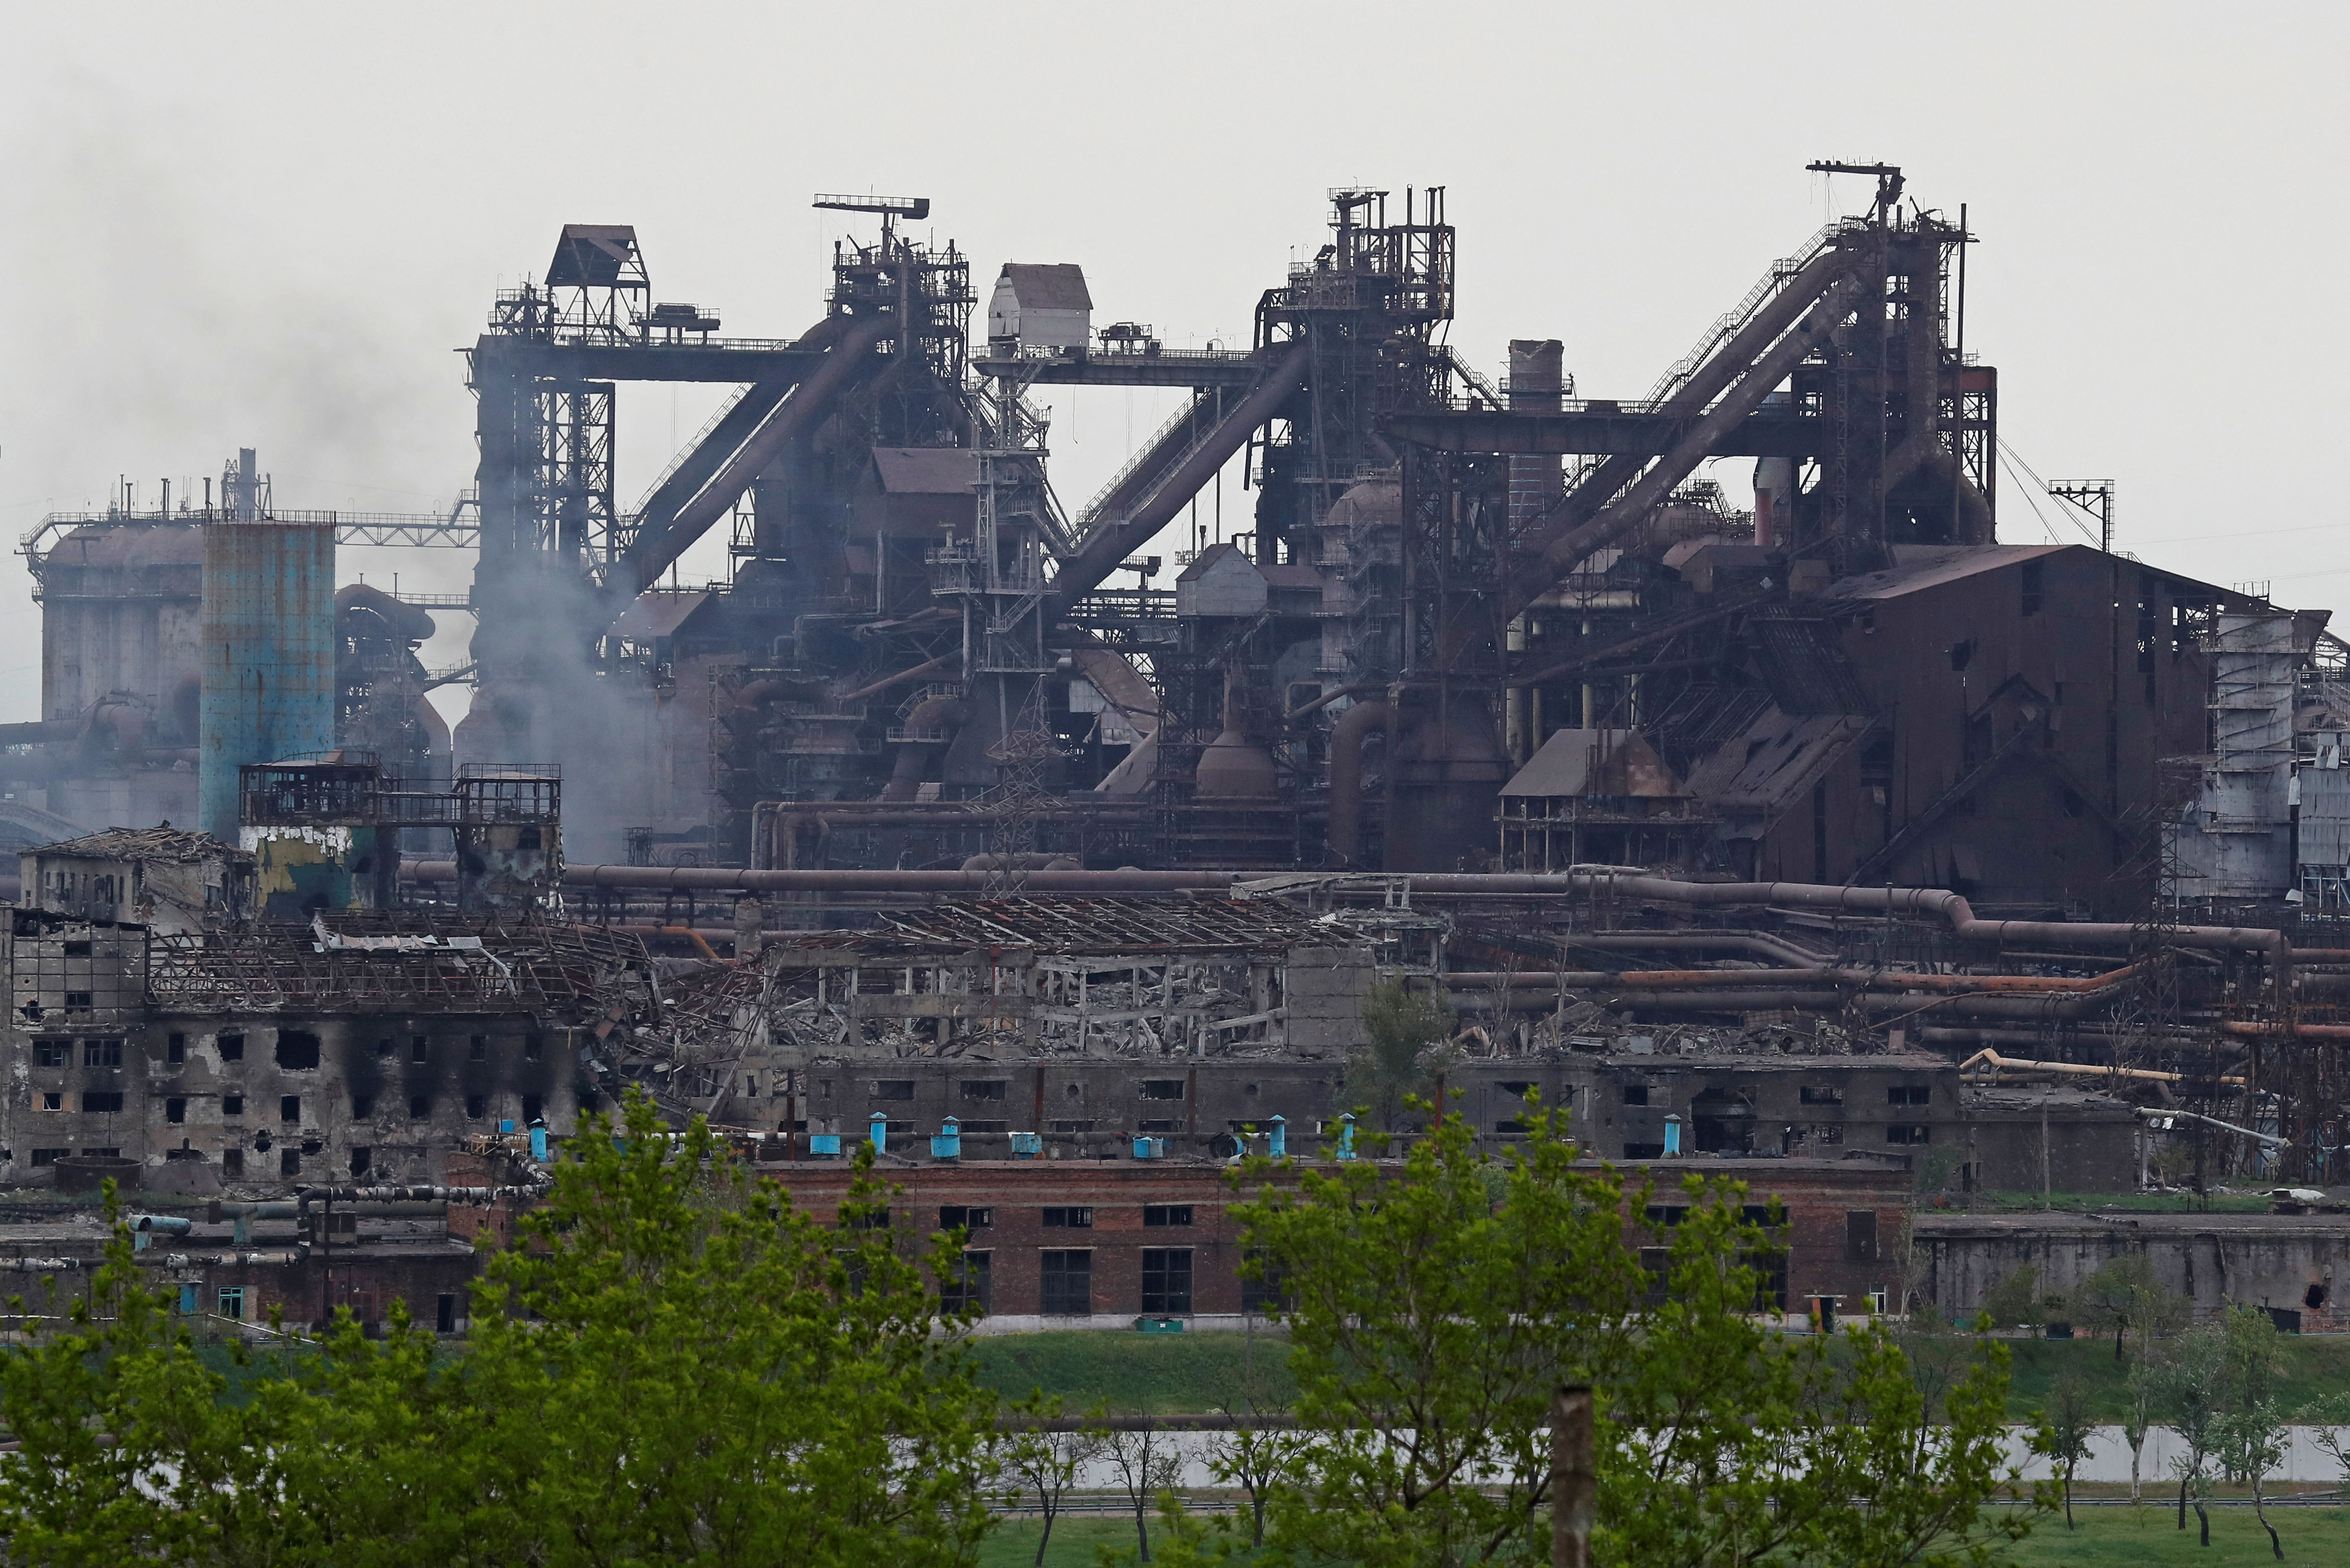 Las instalaciones destruidas de Azovstal Iron and Steel Works durante el conflicto entre Ucrania y Rusia en la ciudad portuaria del sur de Mariupol, Ucrania 13 de mayo de 2022. REUTERS/Alexander Ermochenko